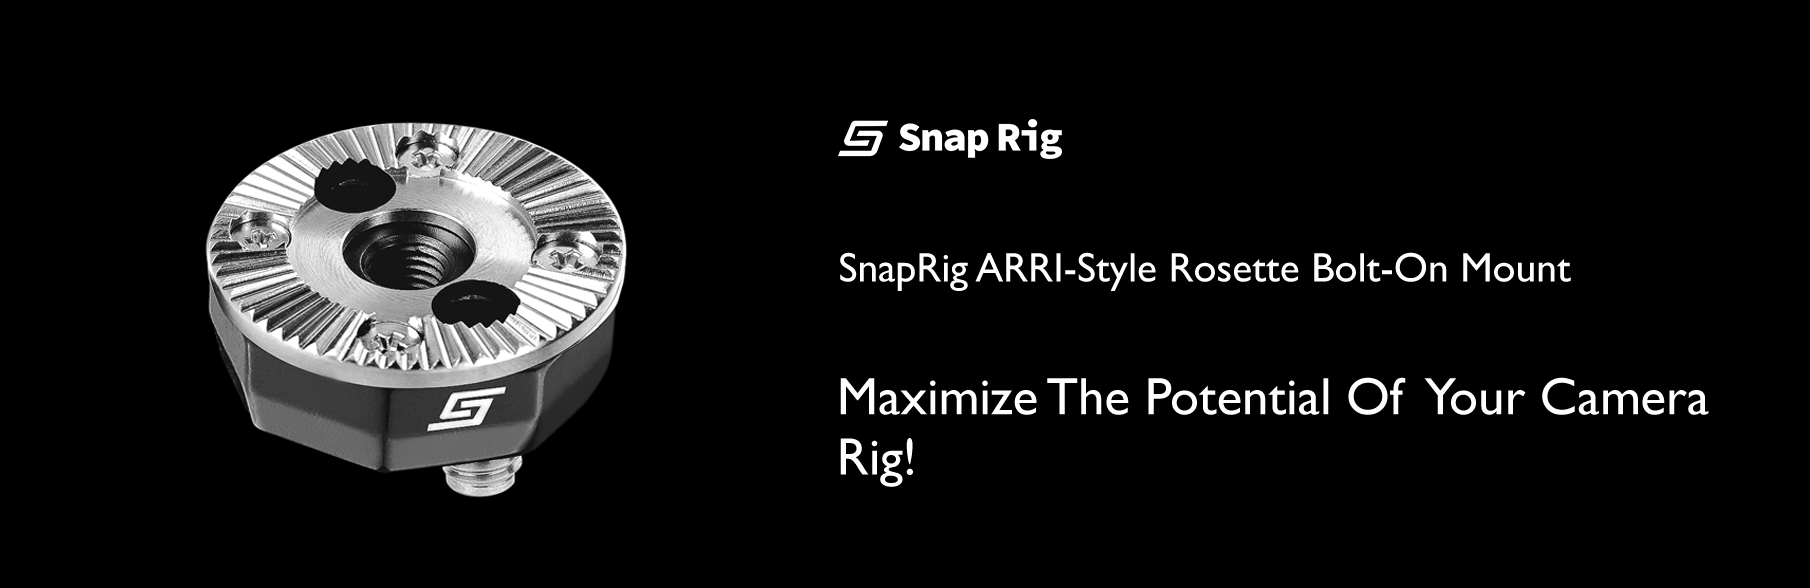 Proaim SnapRig ARRI-Style Rosette Bolt-On Mount. RT208.